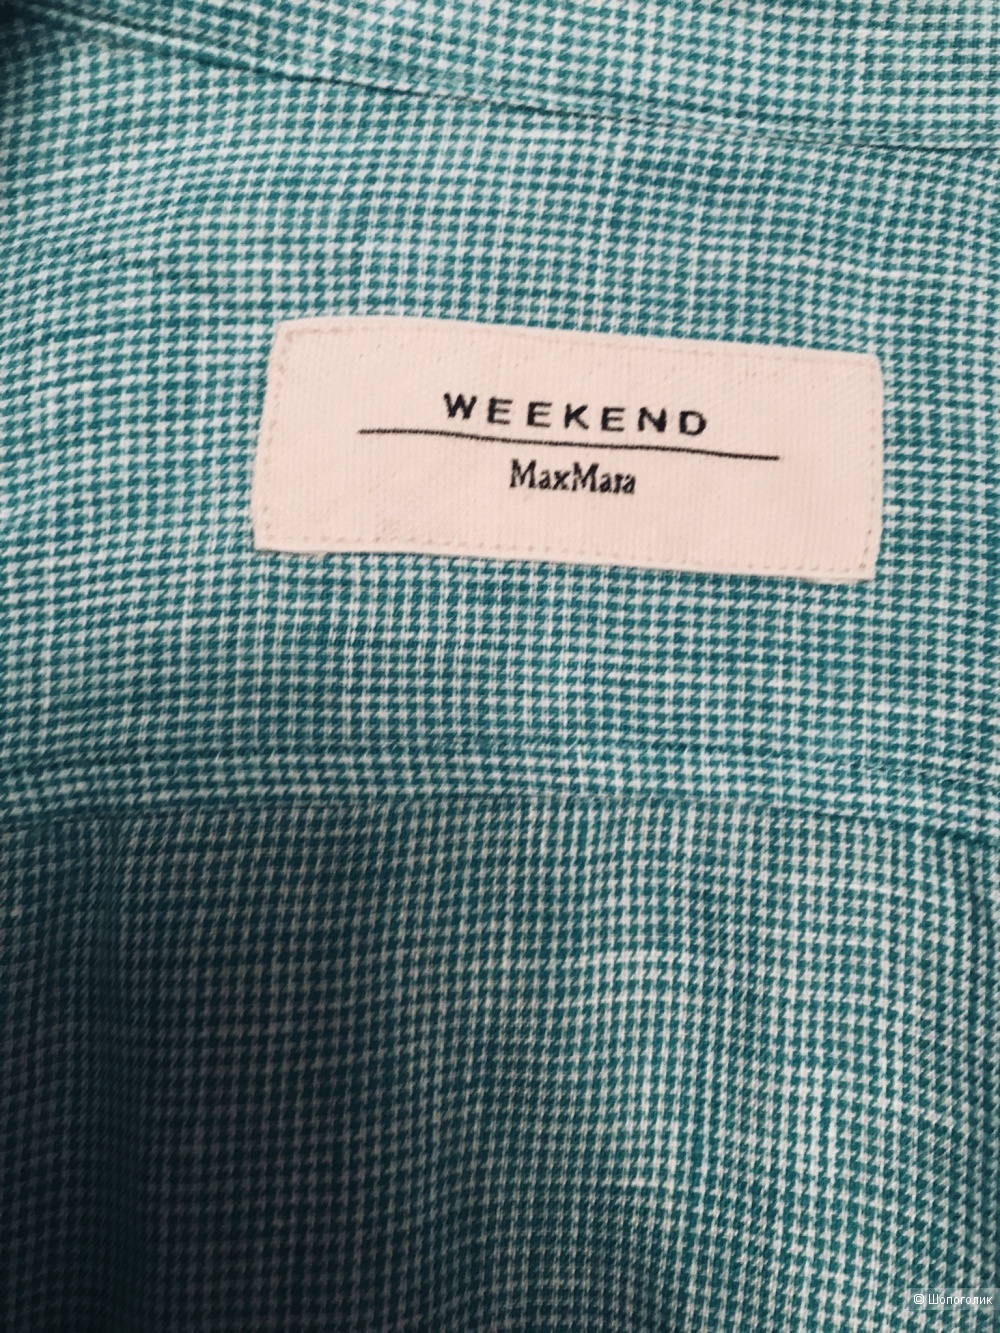 Льняная рубашка Max Mara Weekend M